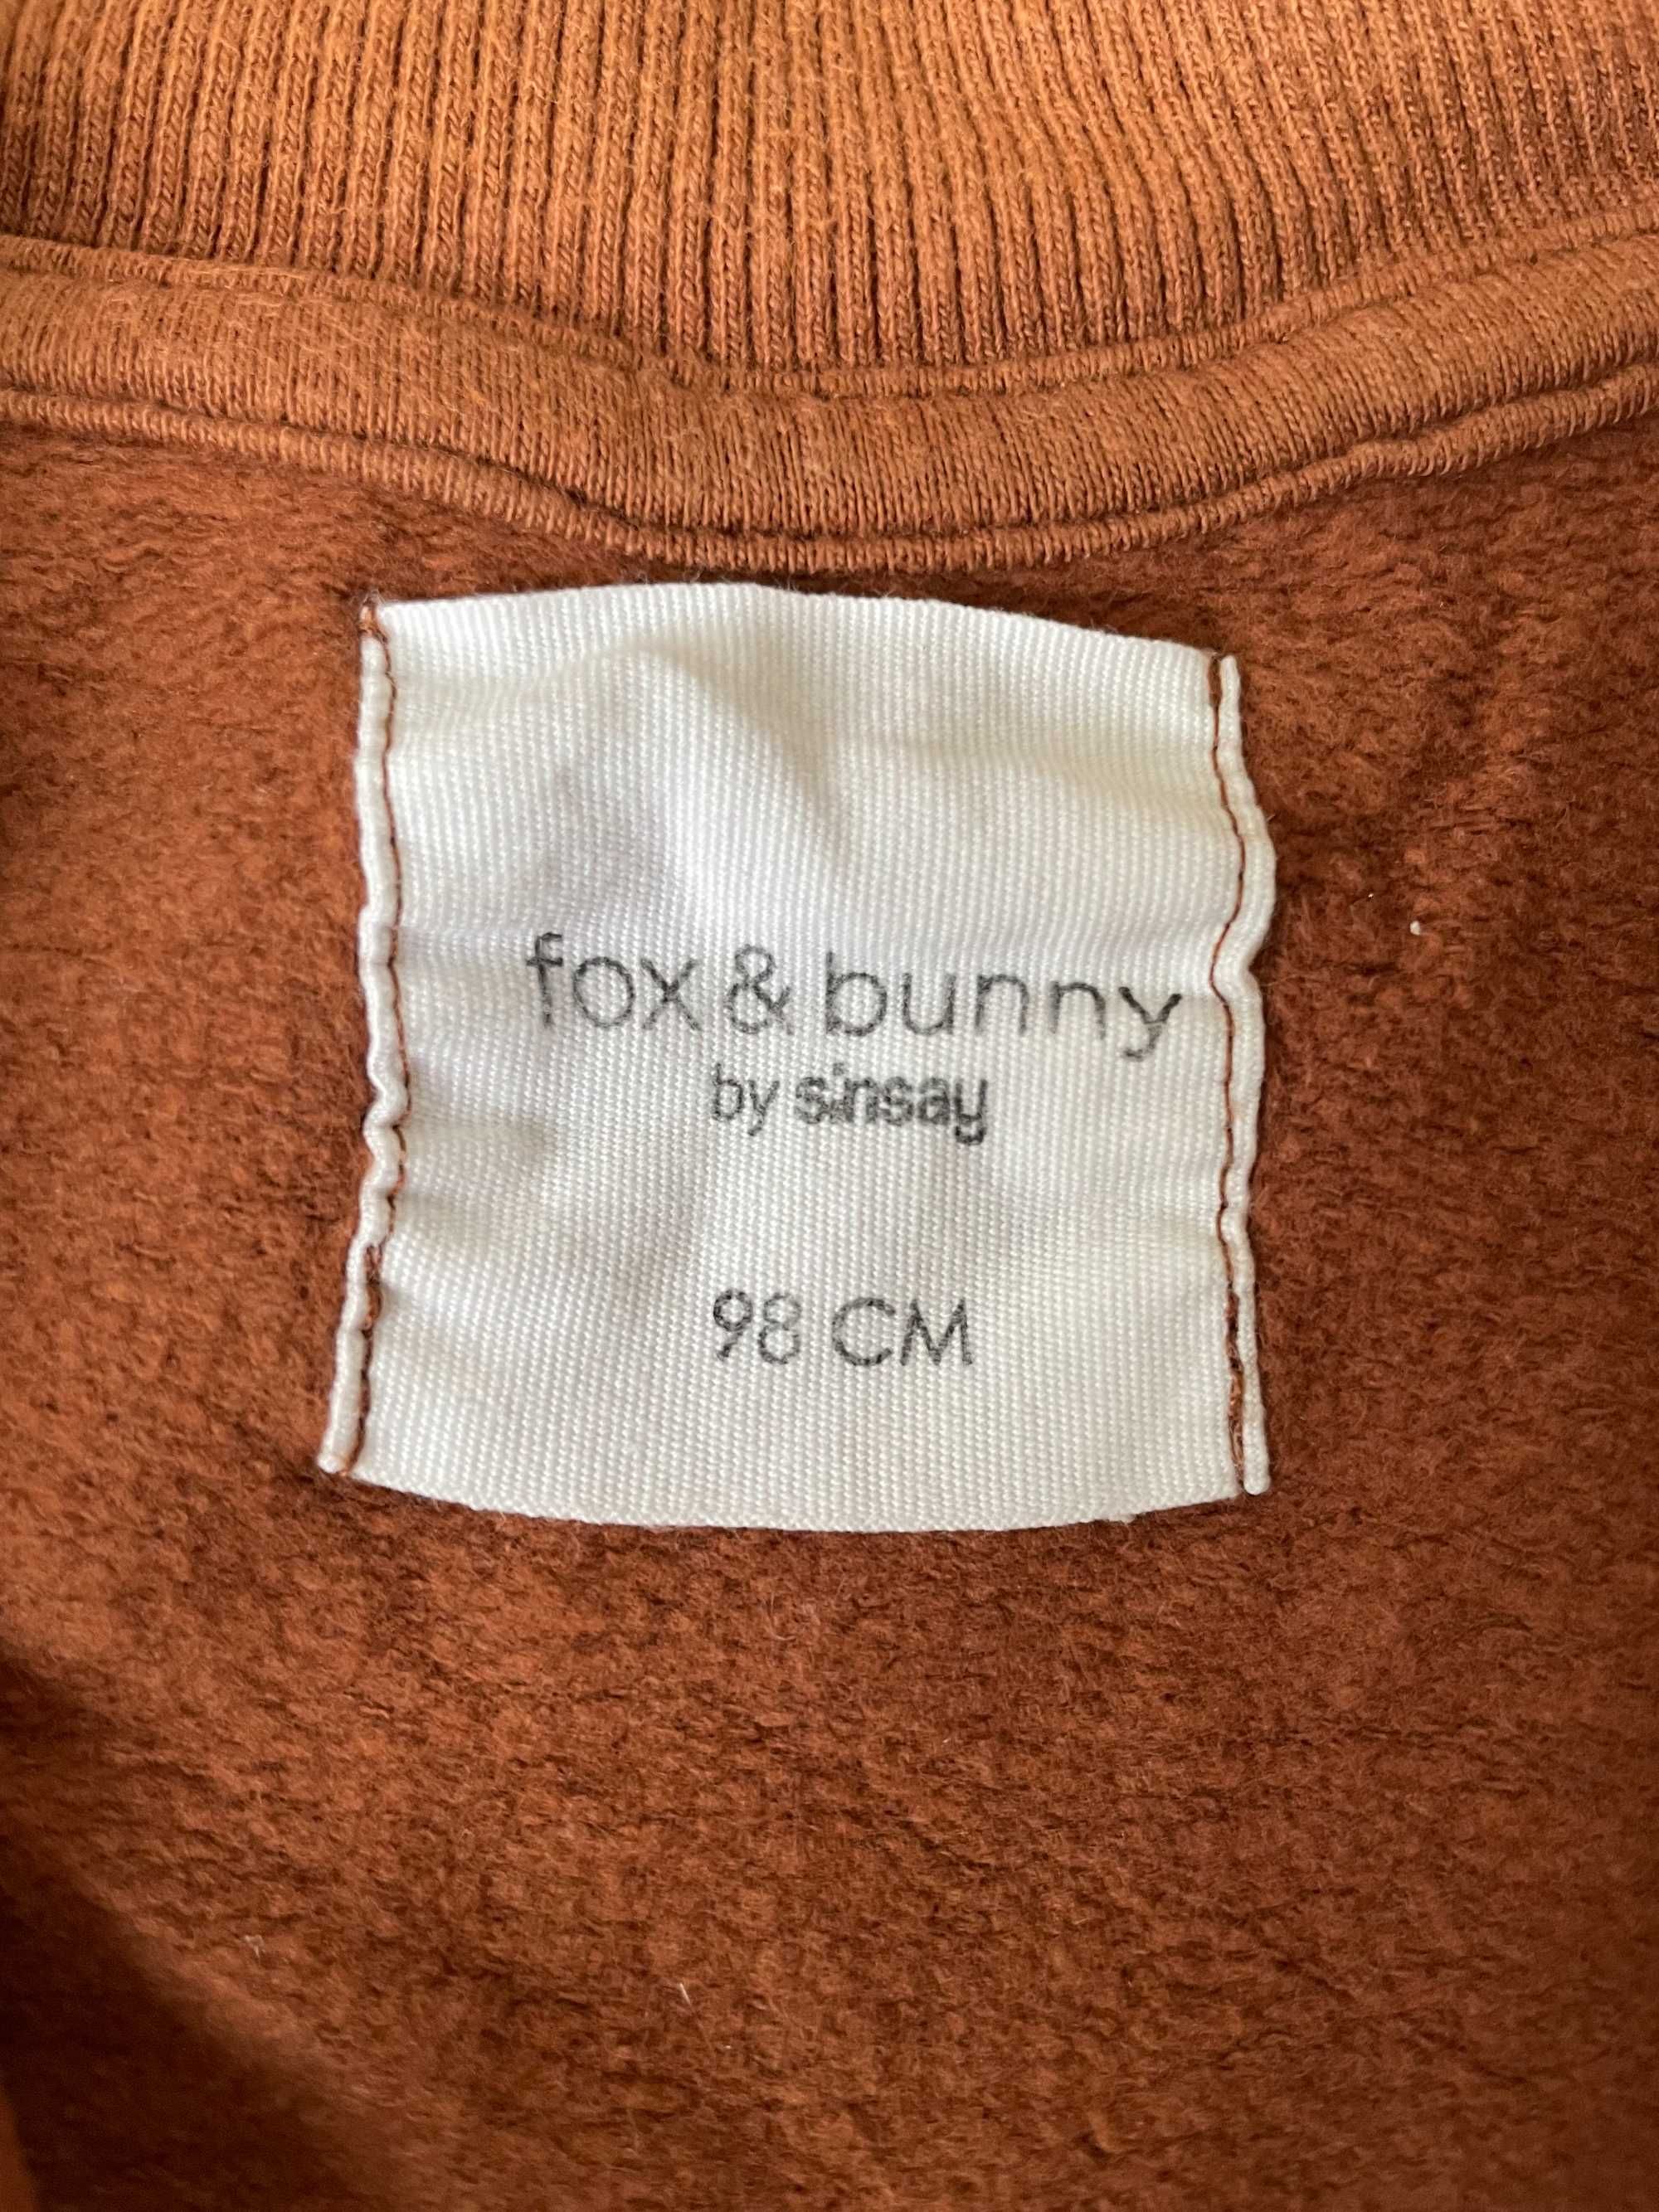 Bluza dziecięca rozpinana Fox&Bunny r.98, zapinana na zamek, print lis